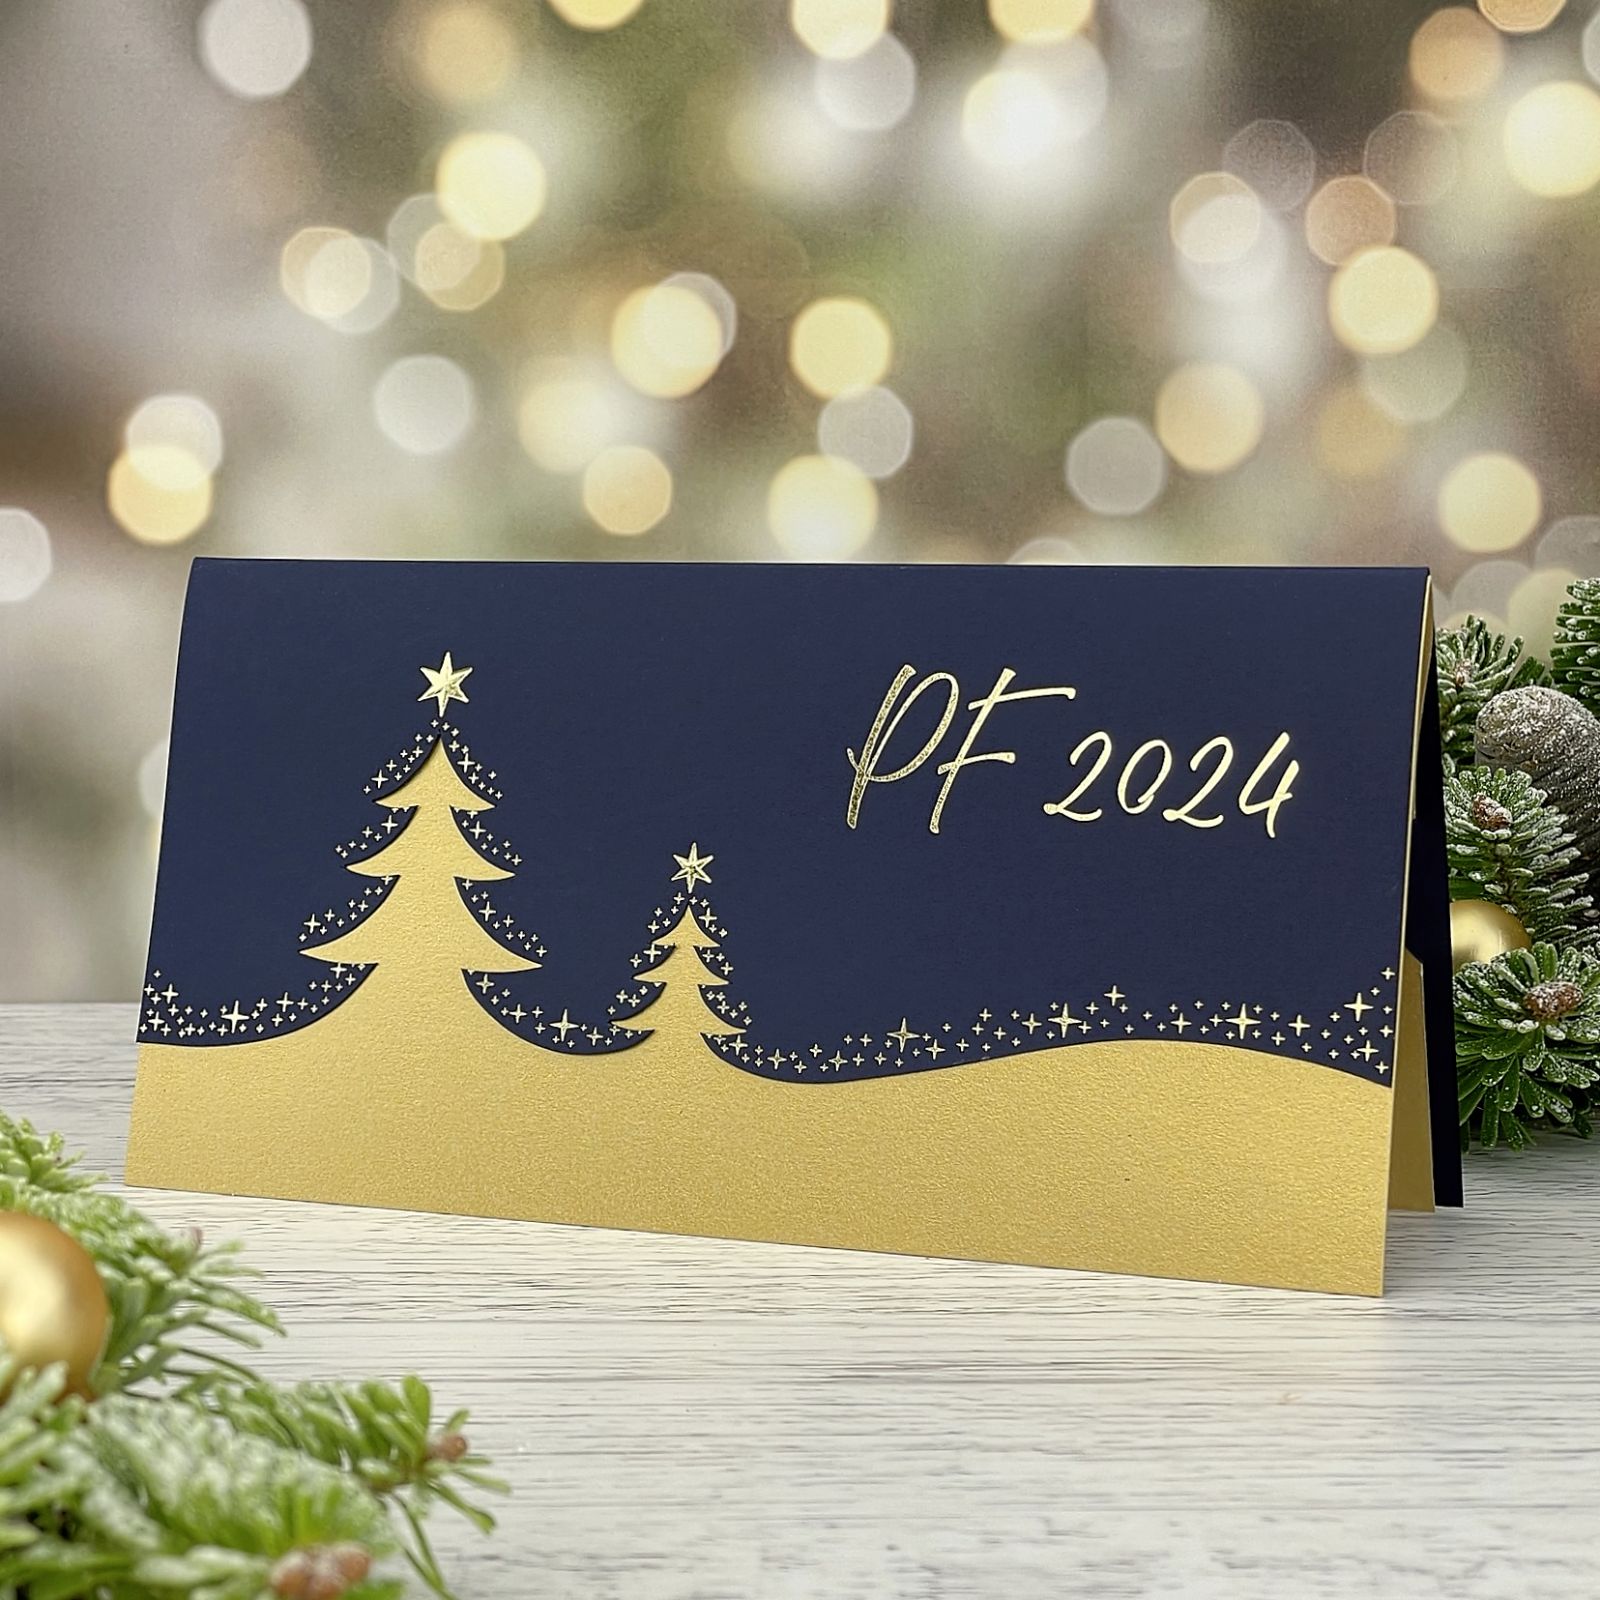 Novoroční–vánoční přání s motivem dvou vánočních stromů na zasněženém horizontu, otevírací, formát 200 × 100 mm.